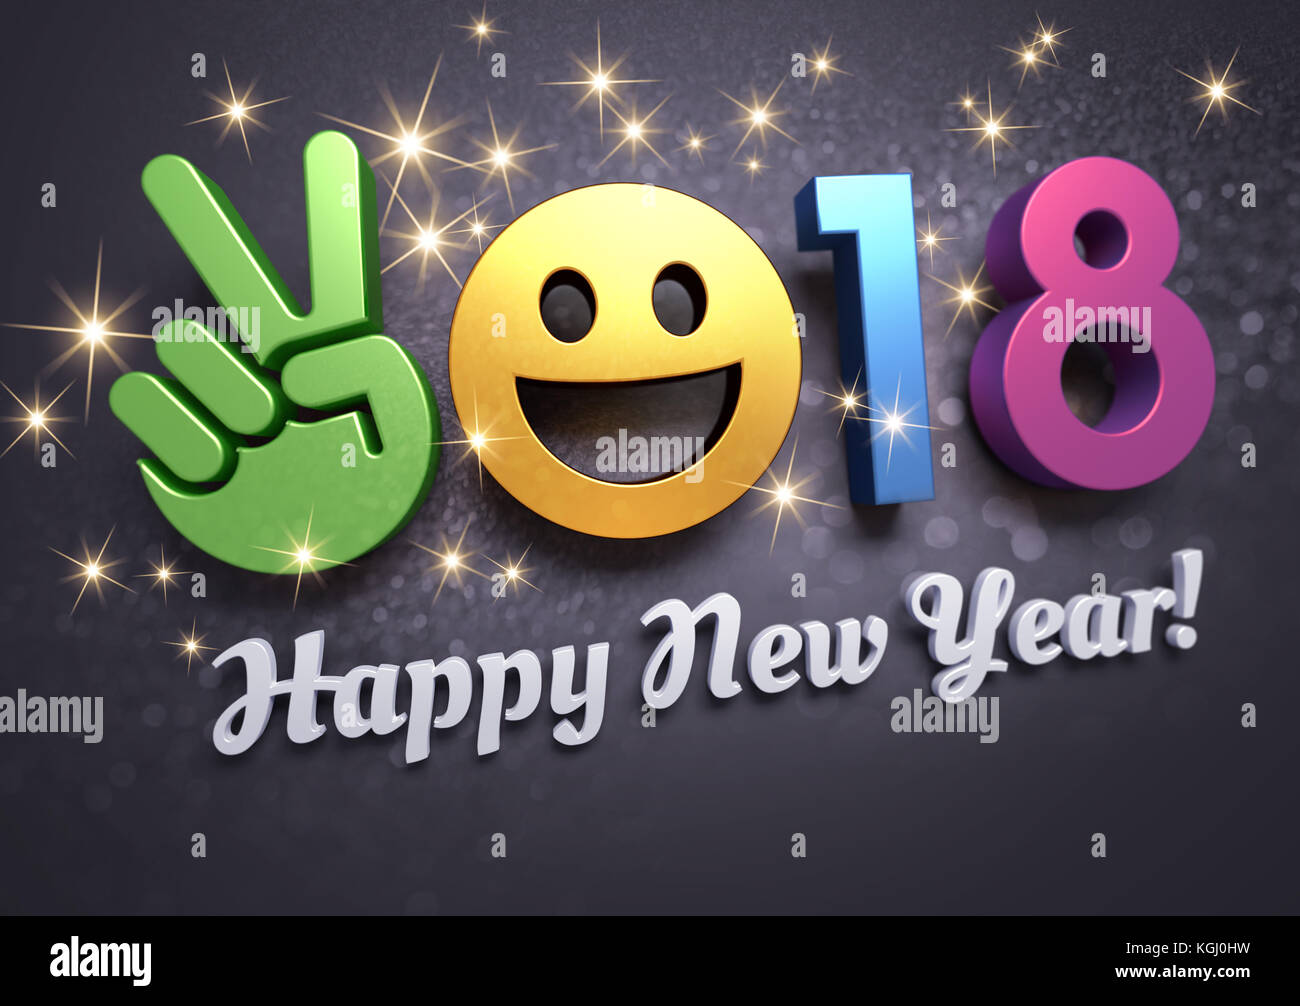 Saluti e multicolori 2018 Anno nuovo data composta con una faccia sorridente simbolo, su una festosa sfondo nero - 3d illustrazione Foto Stock